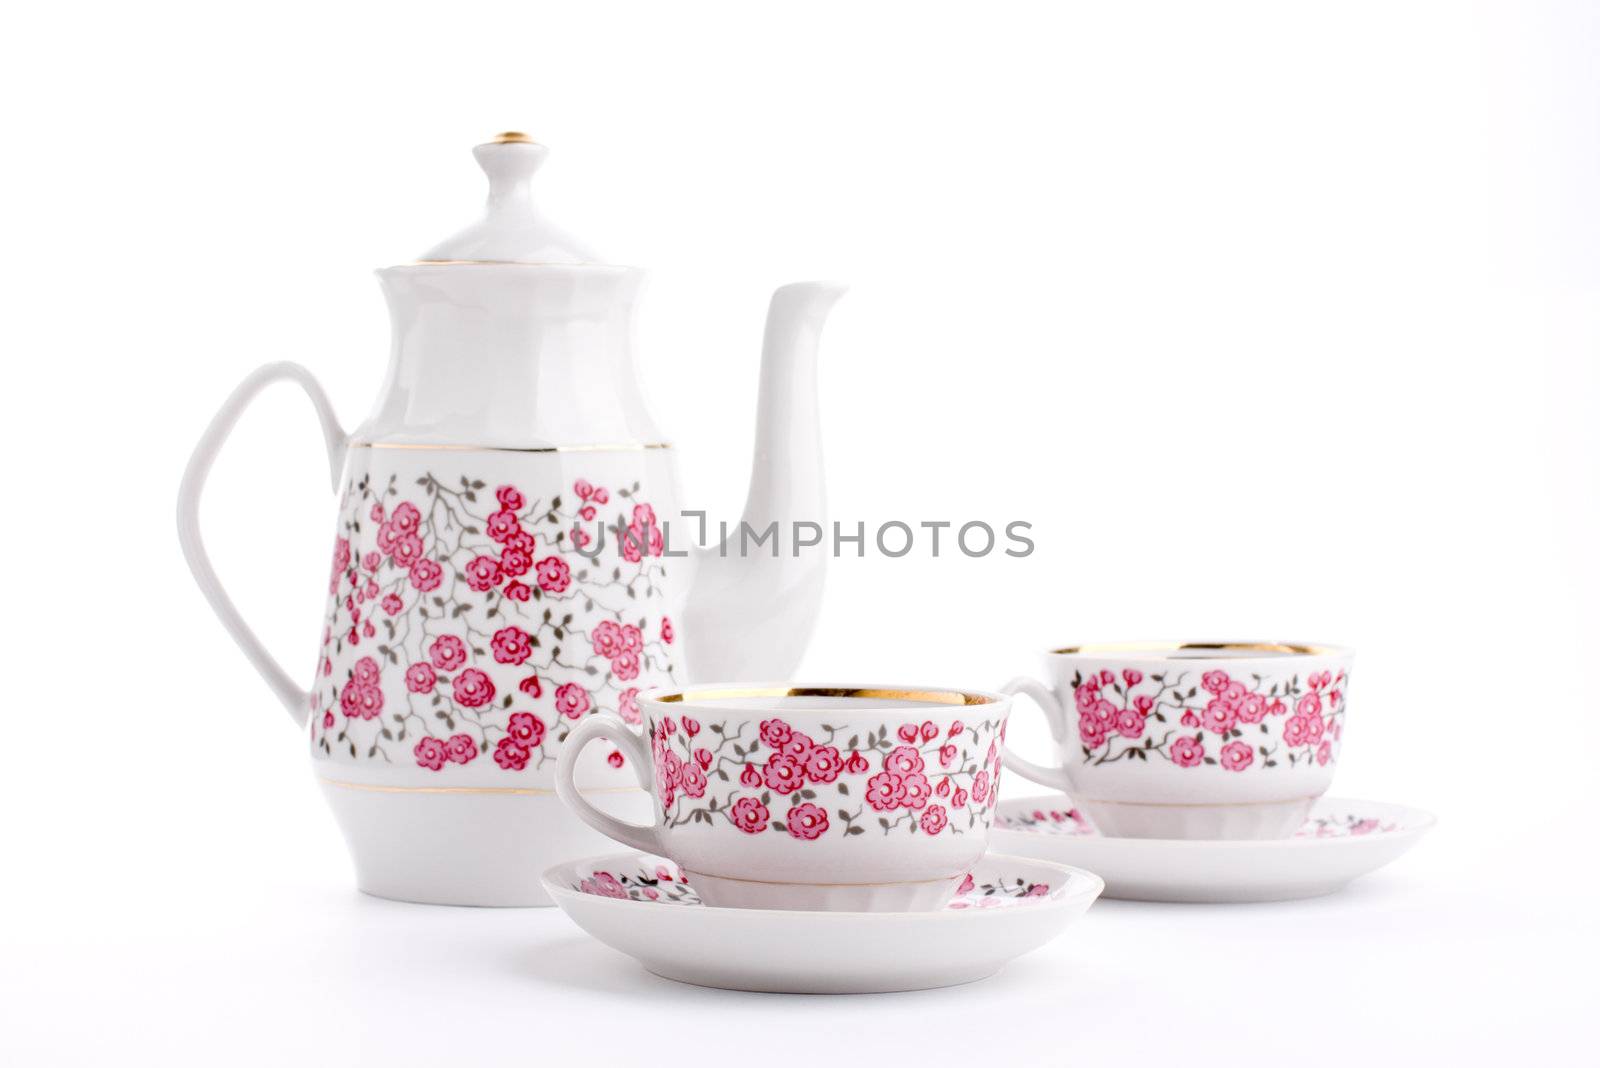 Elegant porcelain tea set isolated over white